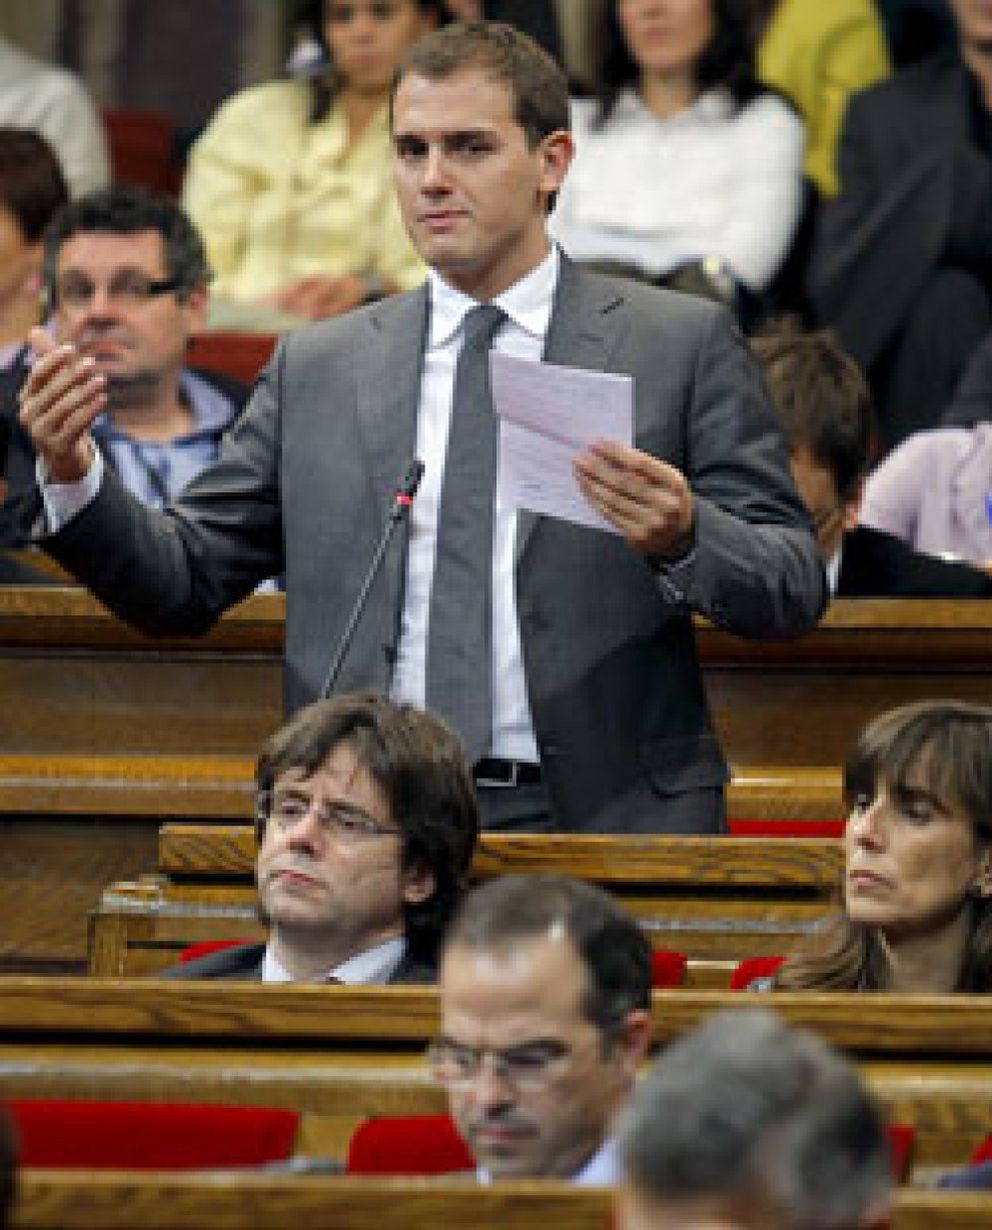 Foto: El candidato de Solidaritat Catalana que amenazó a C's se retira